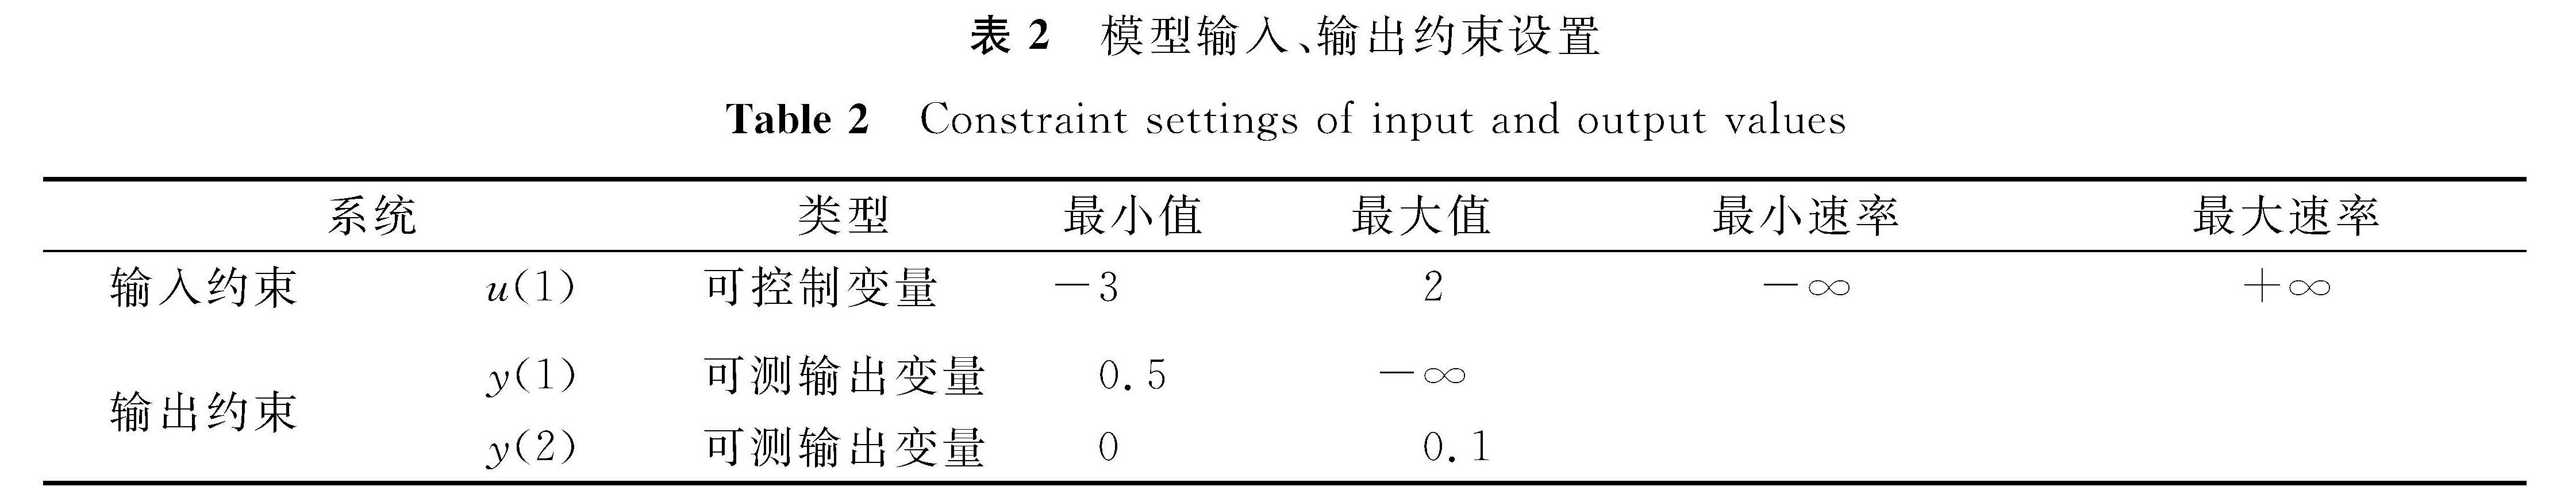 表2 模型输入、输出约束设置<br/>Table 2 Constraint settings of input and output values